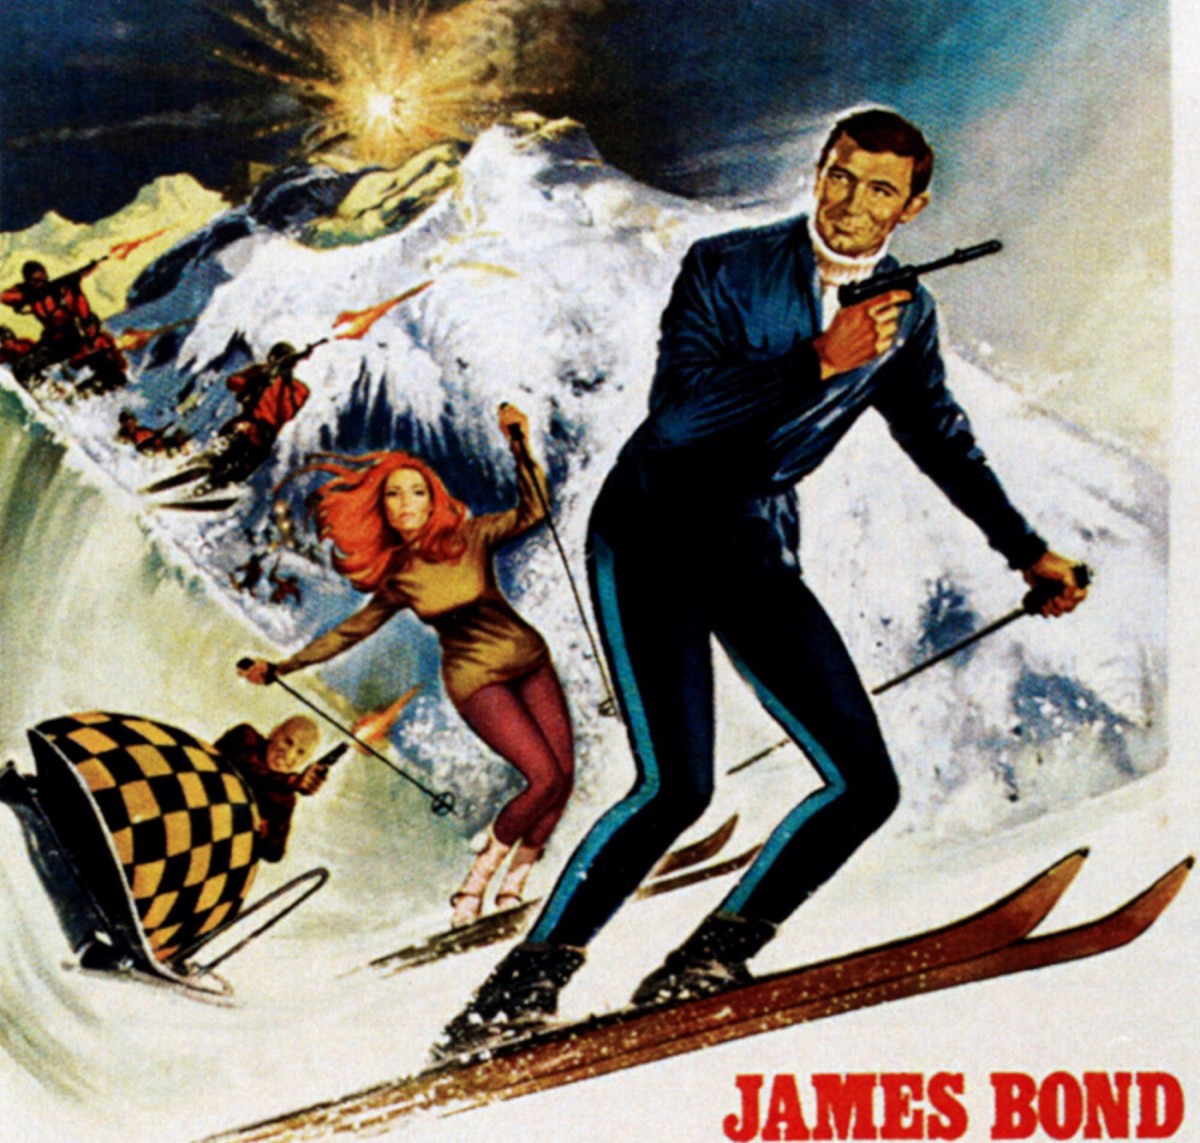 www.finest-holidays.com James Bond destinations alps